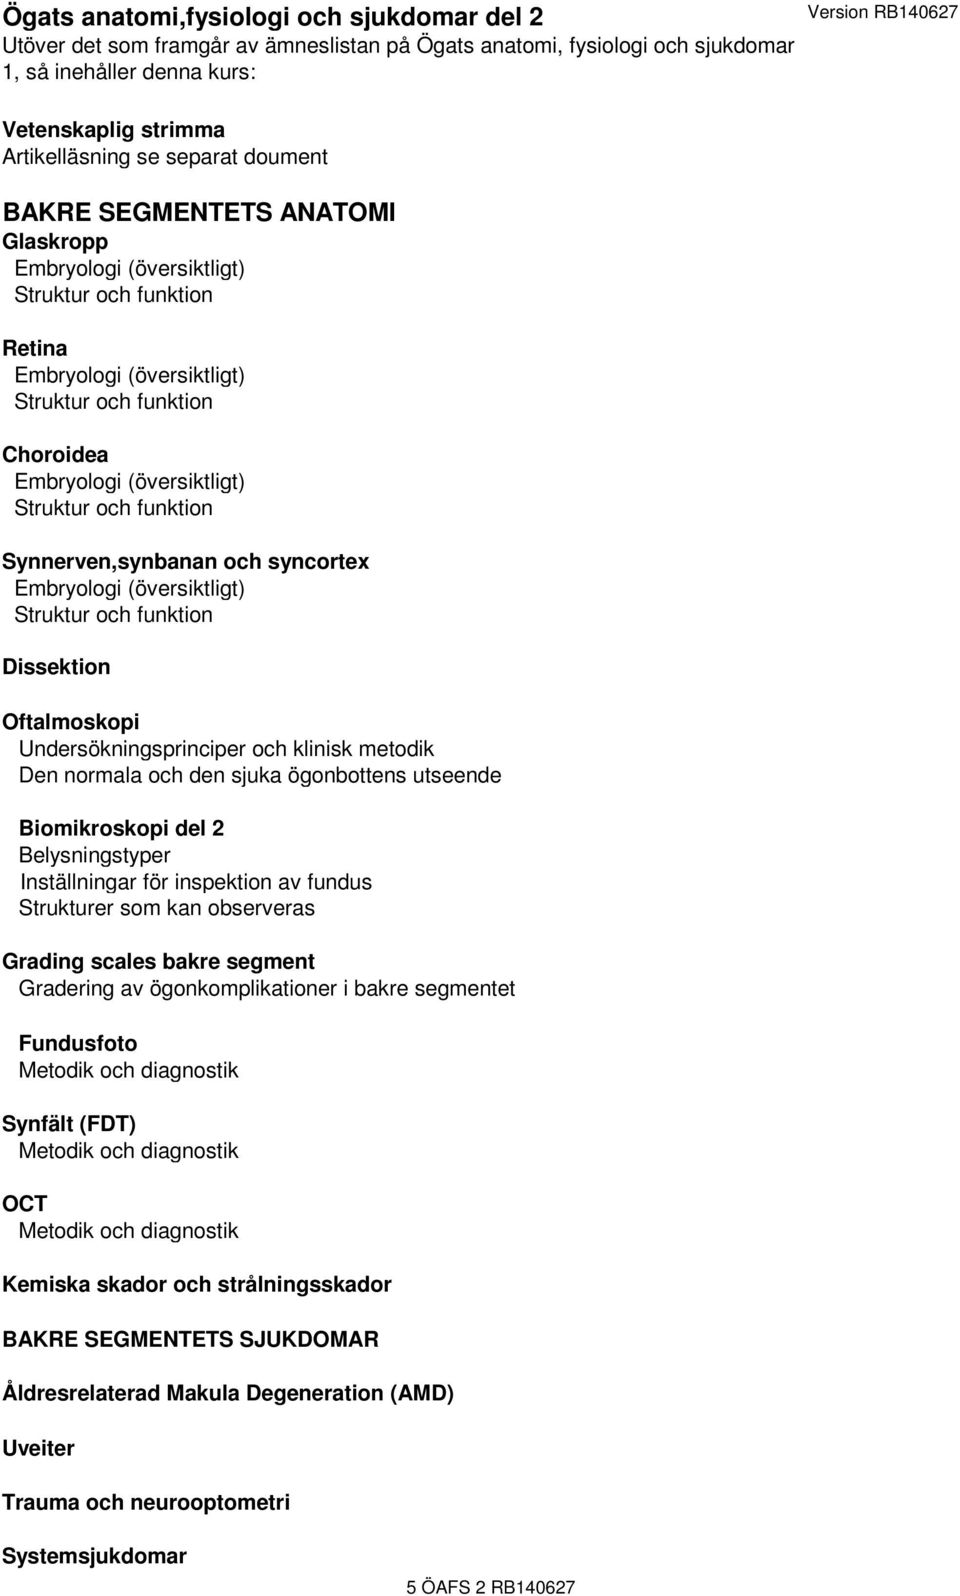 (översiktligt) Struktur och funktion Synnerven,synbanan och syncortex Embryologi (översiktligt) Struktur och funktion Dissektion Oftalmoskopi Undersökningsprinciper och klinisk metodik Den normala